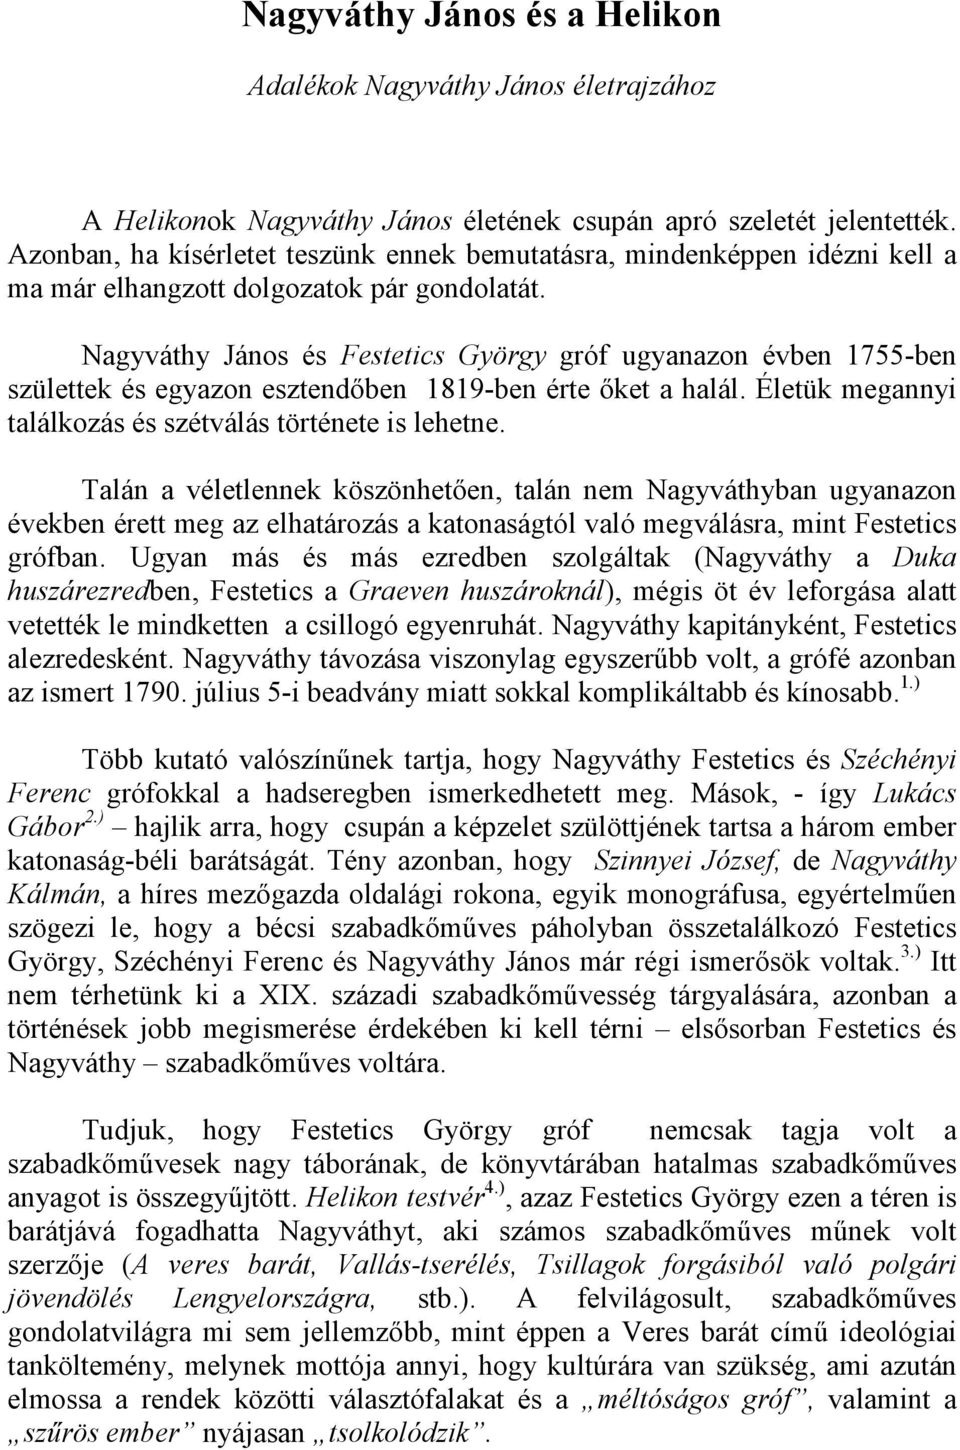 Nagyváthy János és Festetics György gróf ugyanazon évben 1755-ben születtek és egyazon esztendıben 1819-ben érte ıket a halál. Életük megannyi találkozás és szétválás története is lehetne.